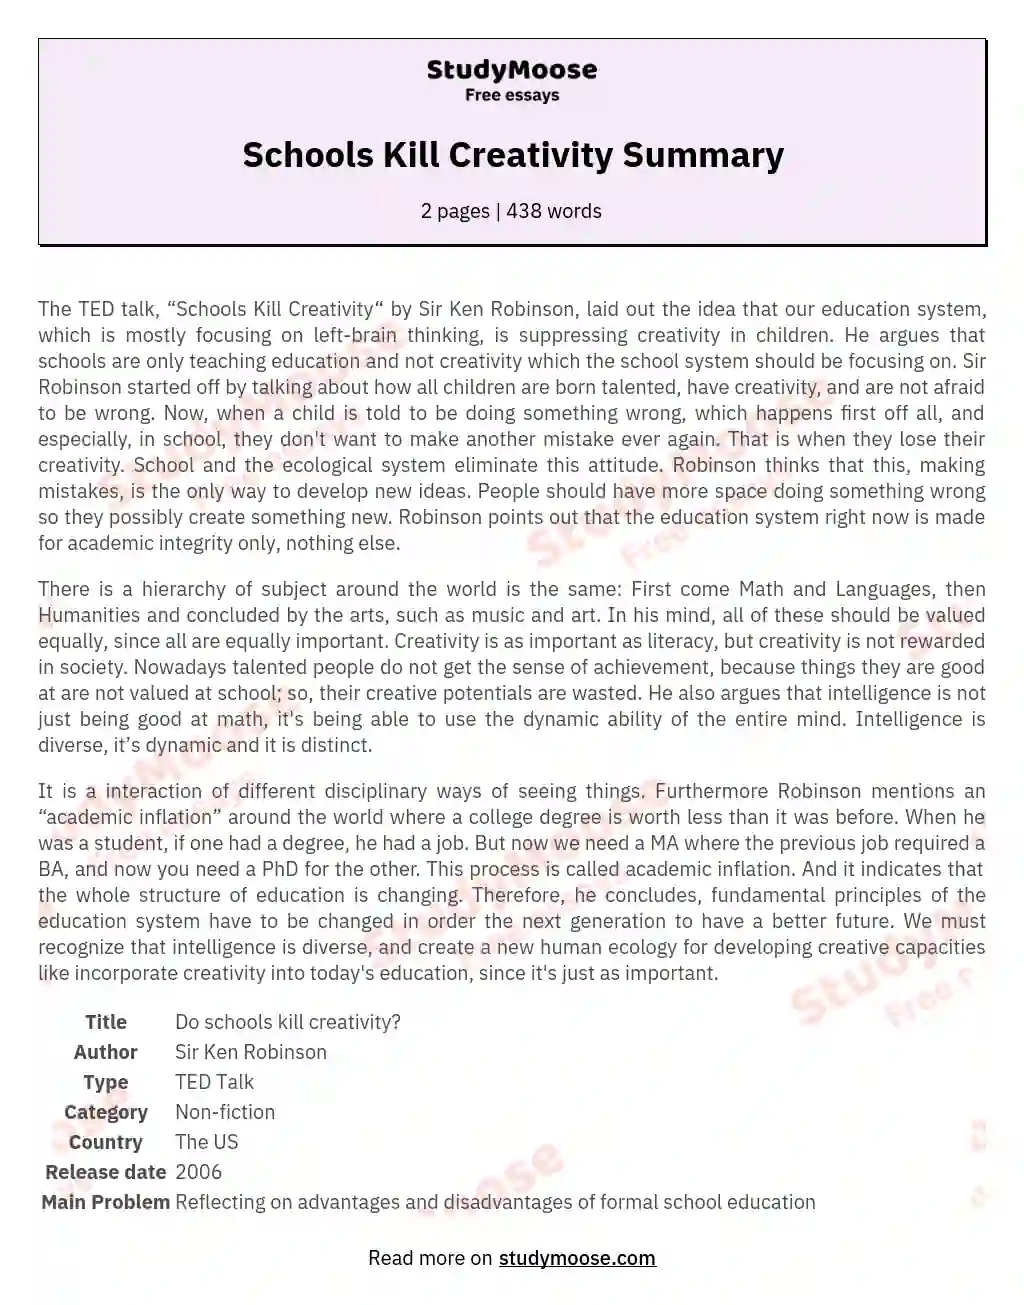 Schools Kill Creativity Summary essay